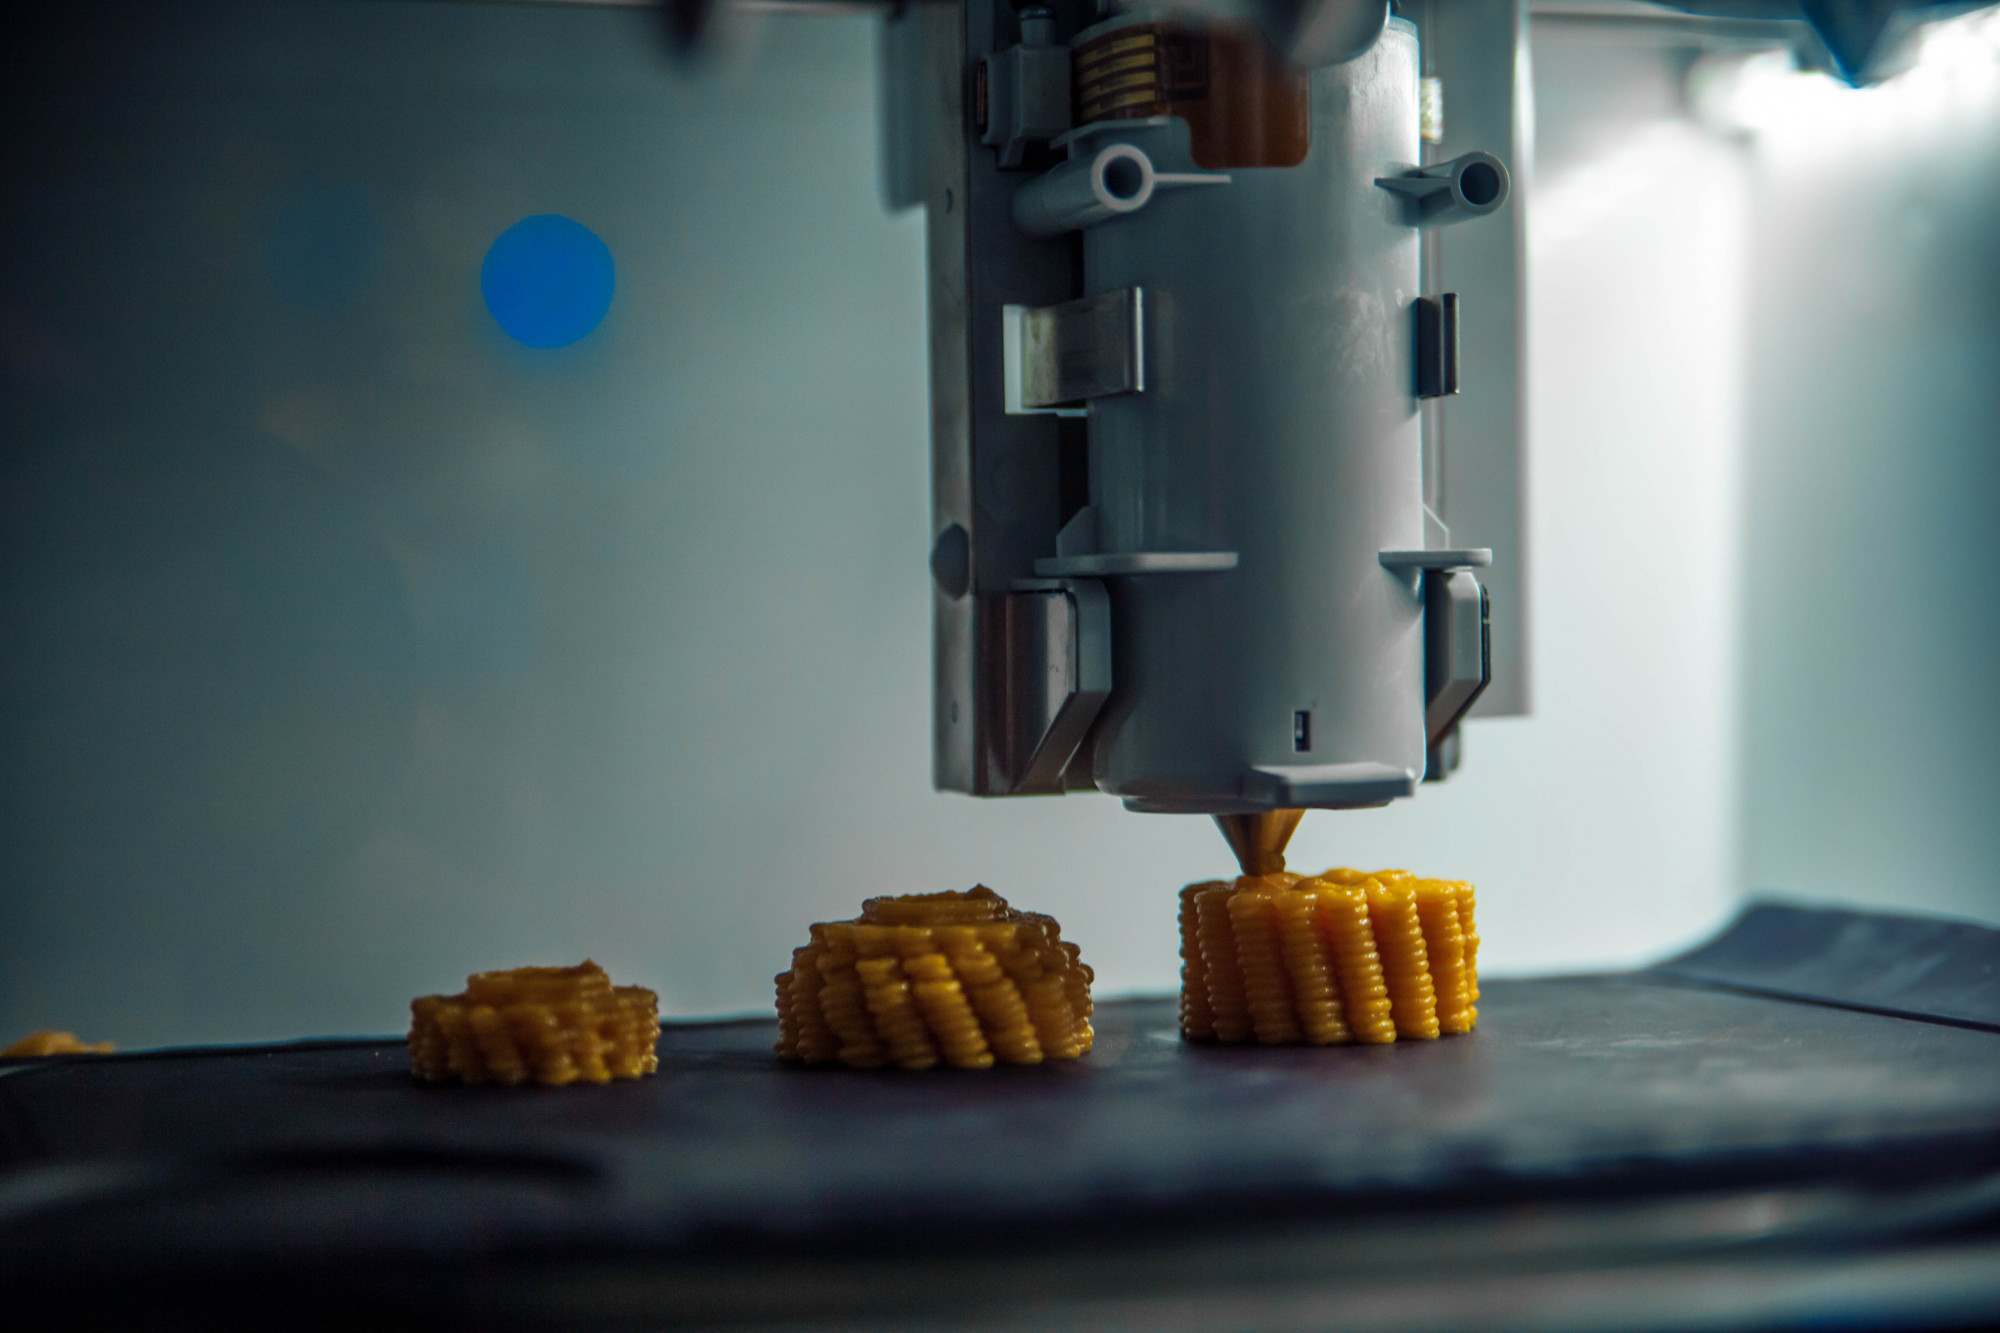 Ma még csak mérnökök printelnek sajttortát, de nemsokára bárki nyomtathat magának kolbászos lecsót